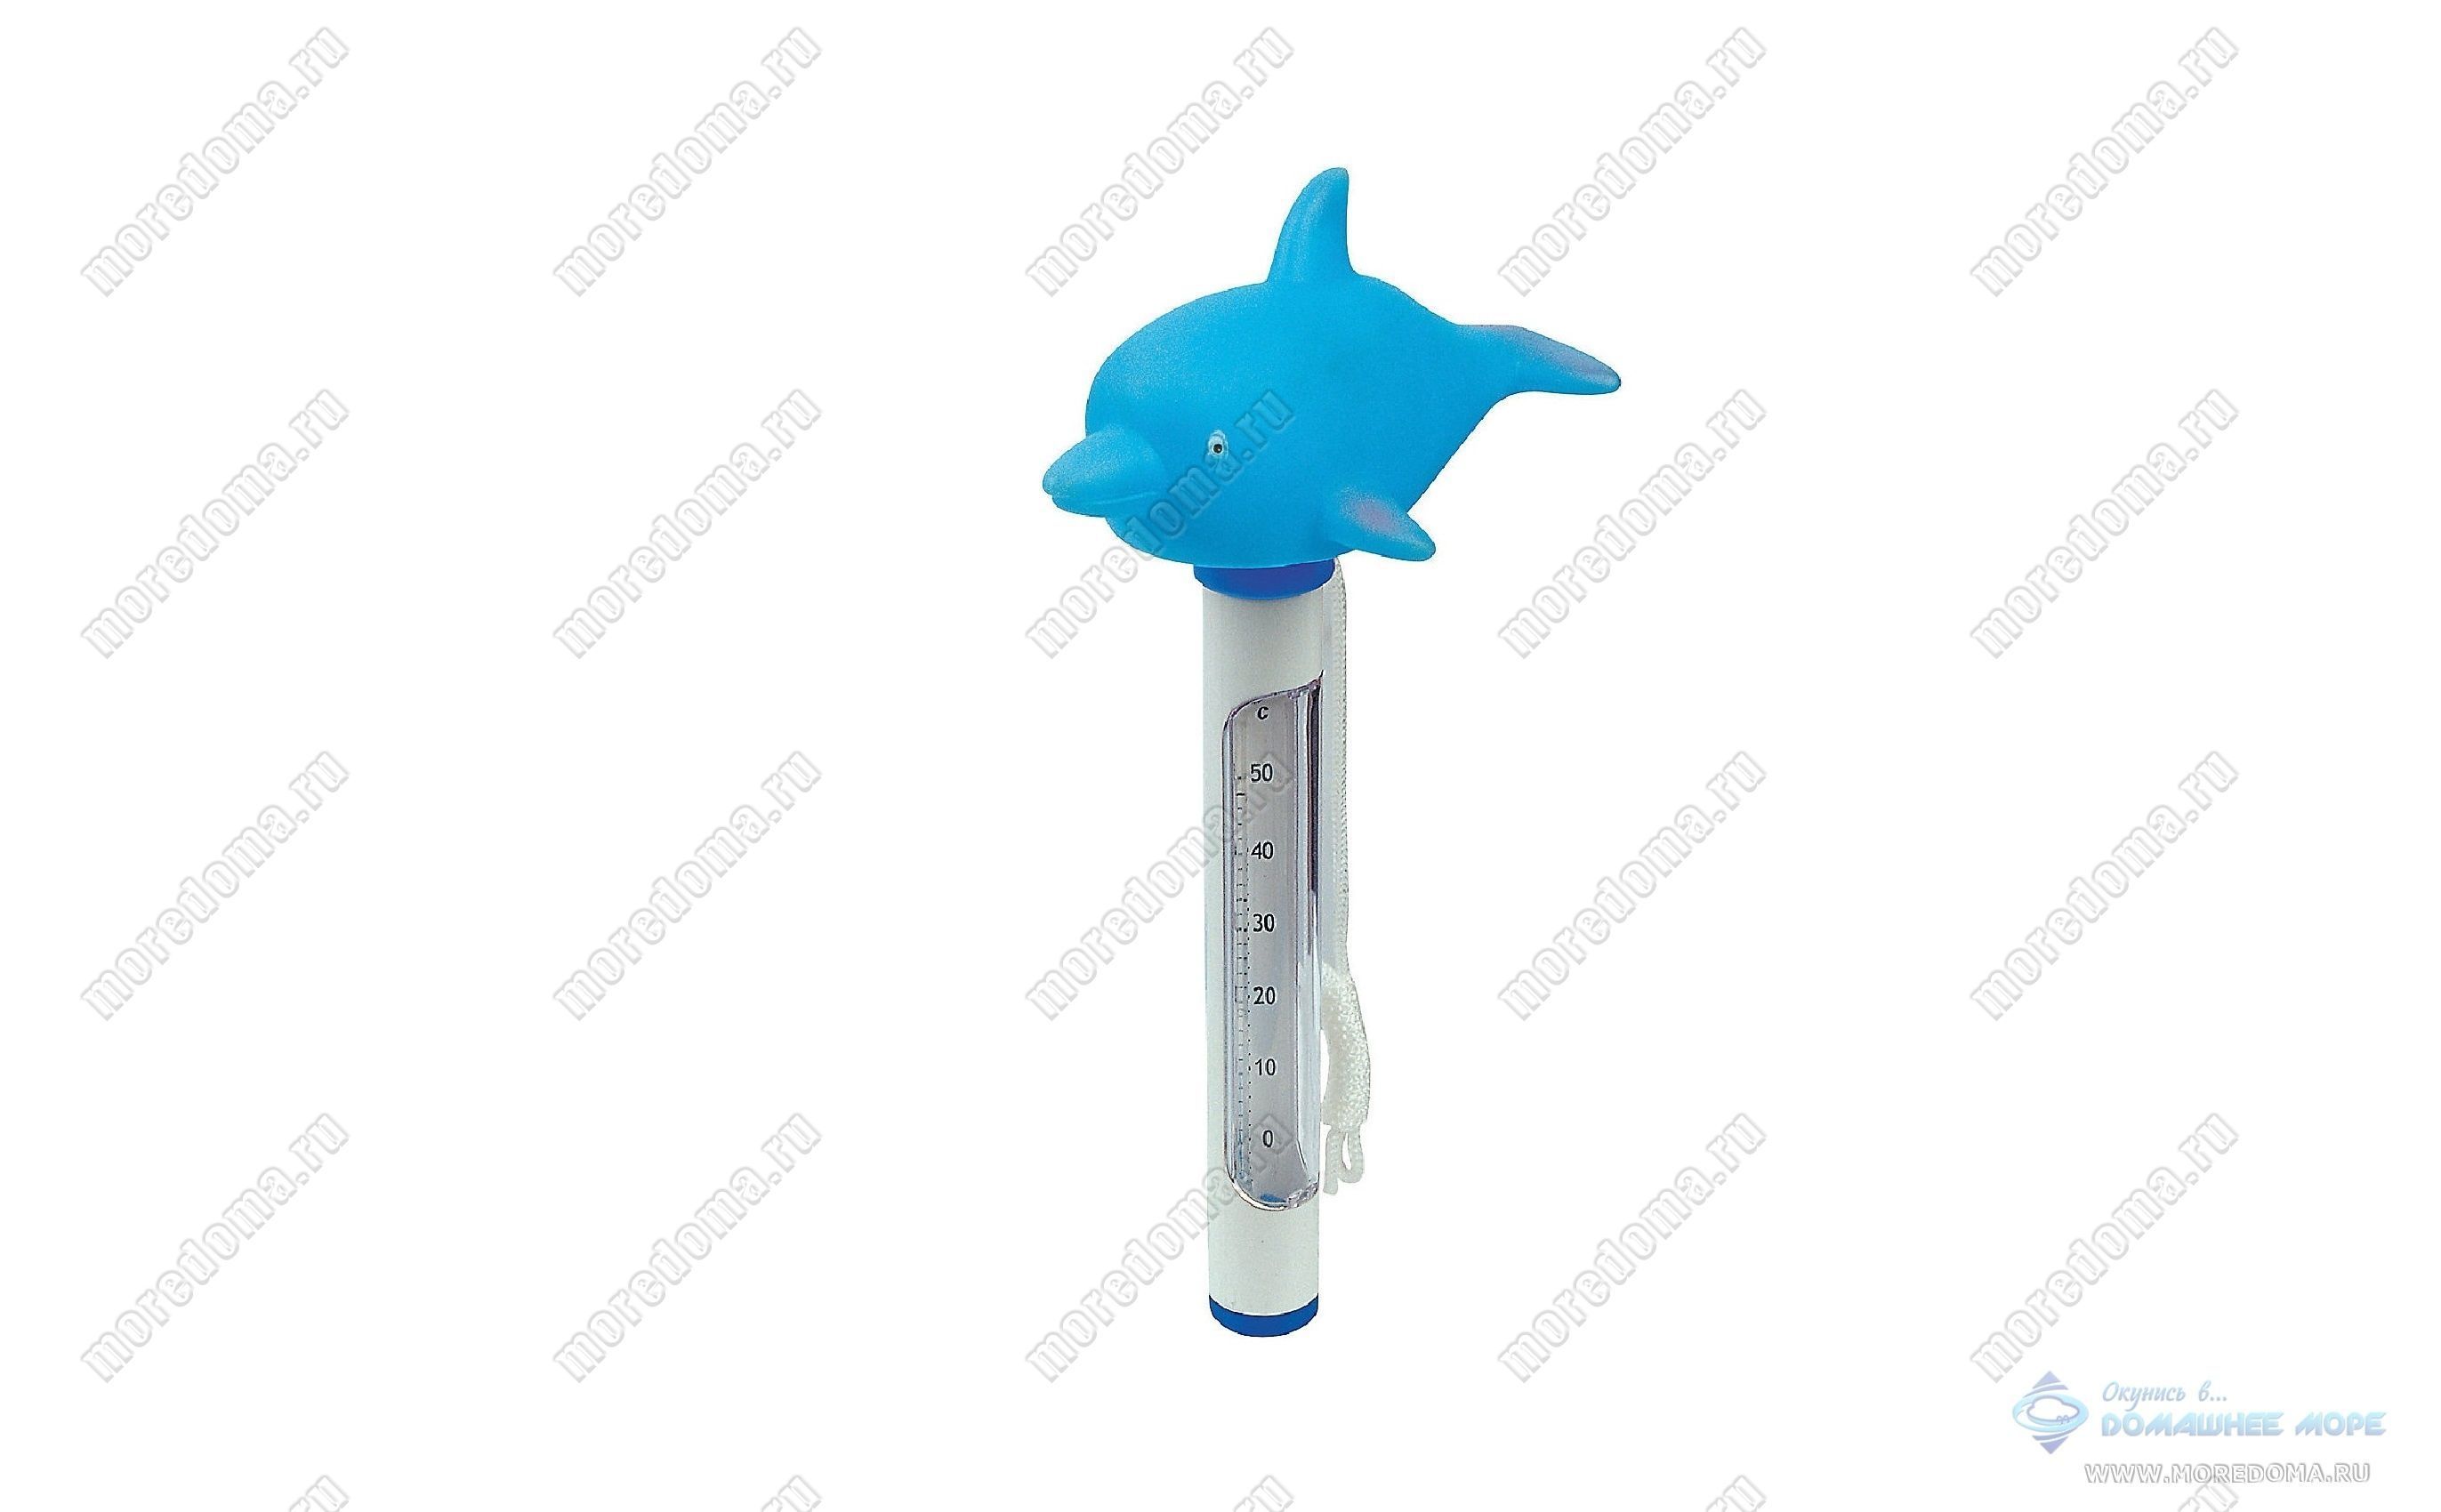 Термометр для бассейна с насадкой игрушкой Bestway дельфин ; арт. 58110